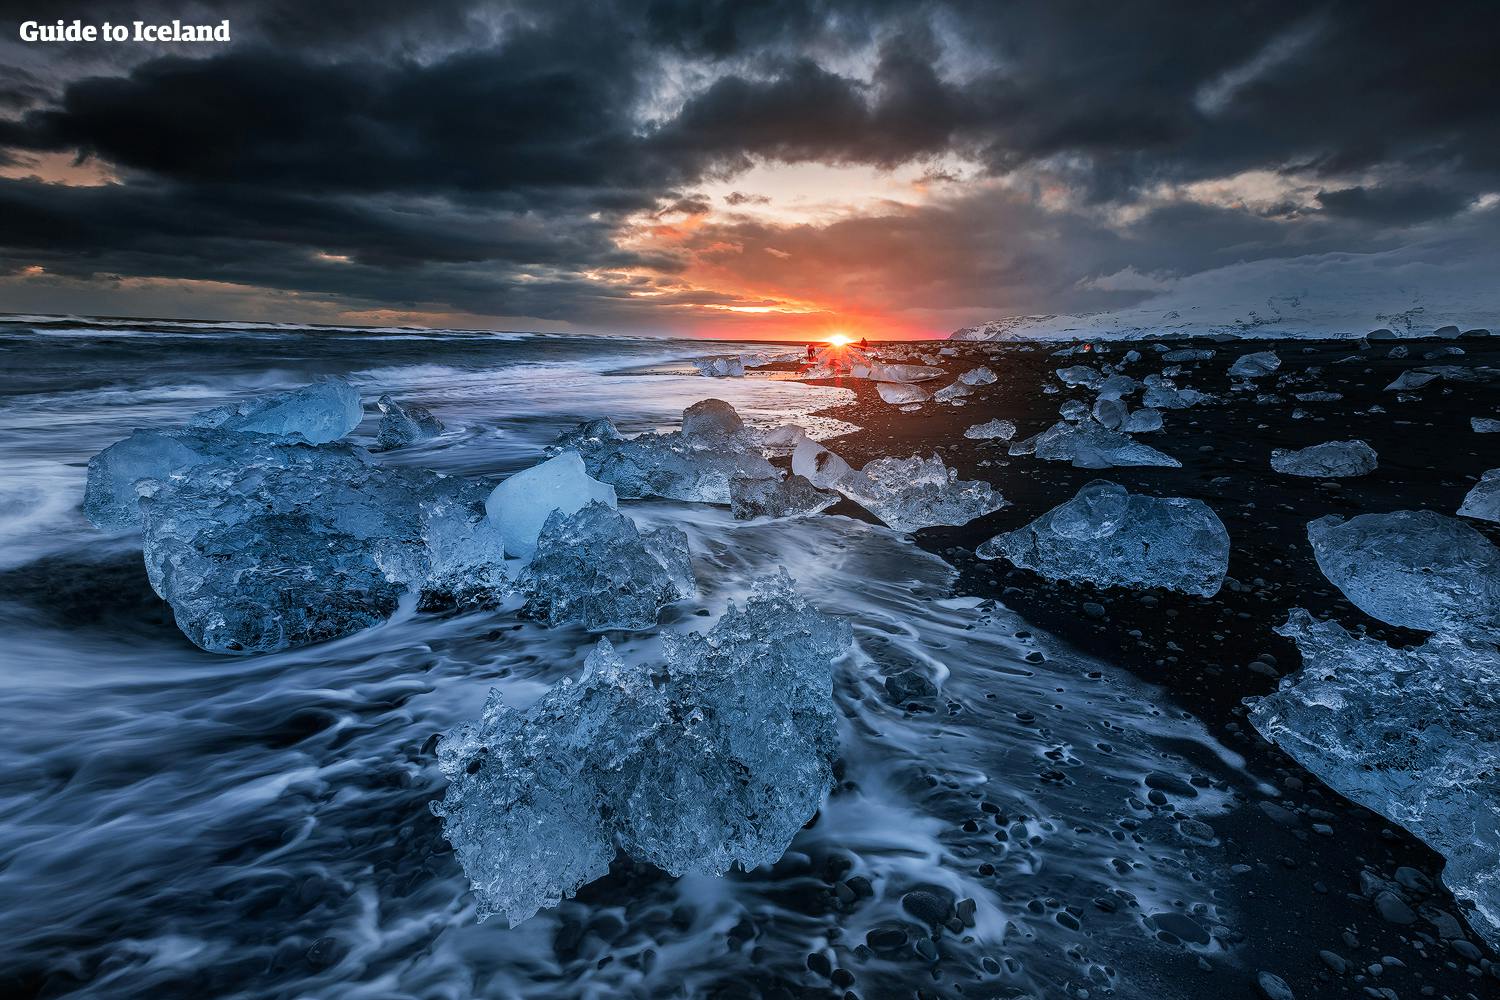 Diamond Beach is een bezienswaardigheid aan de zuidkust IJsland die je echt niet mag missen.